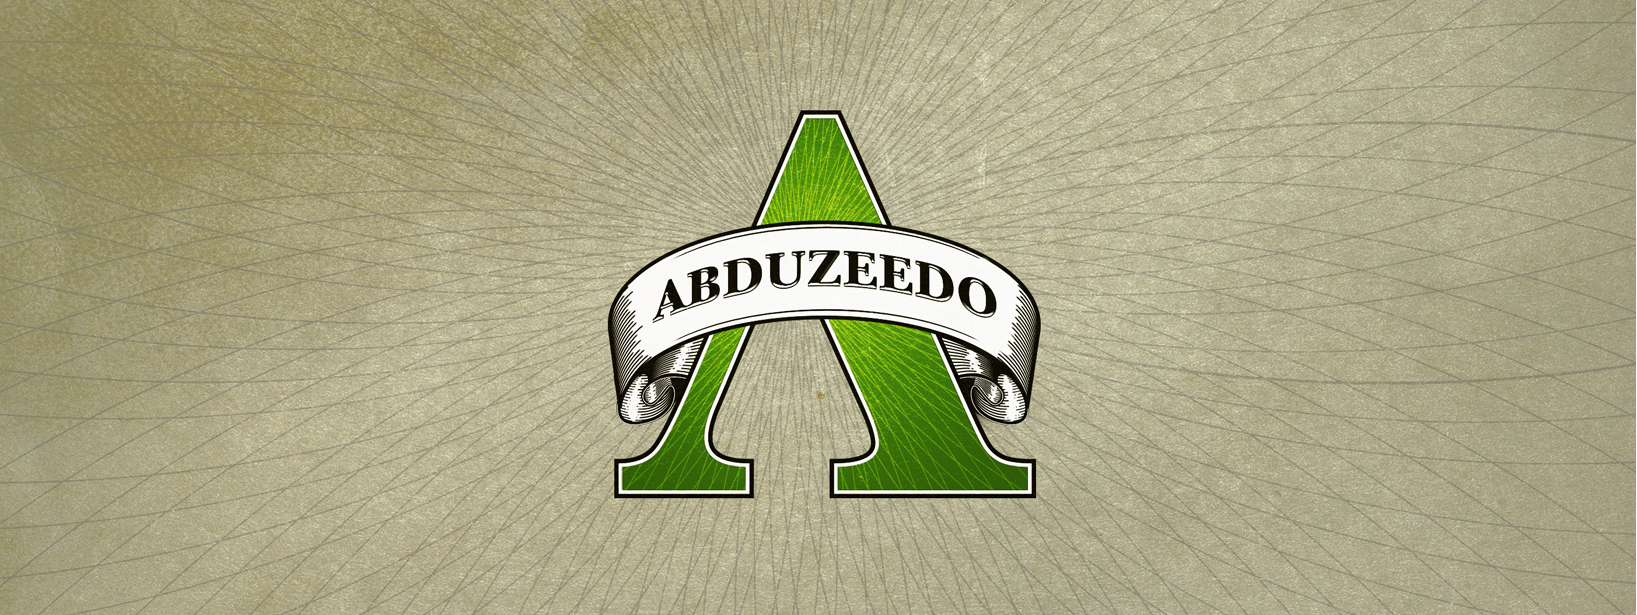 Abduzeedo